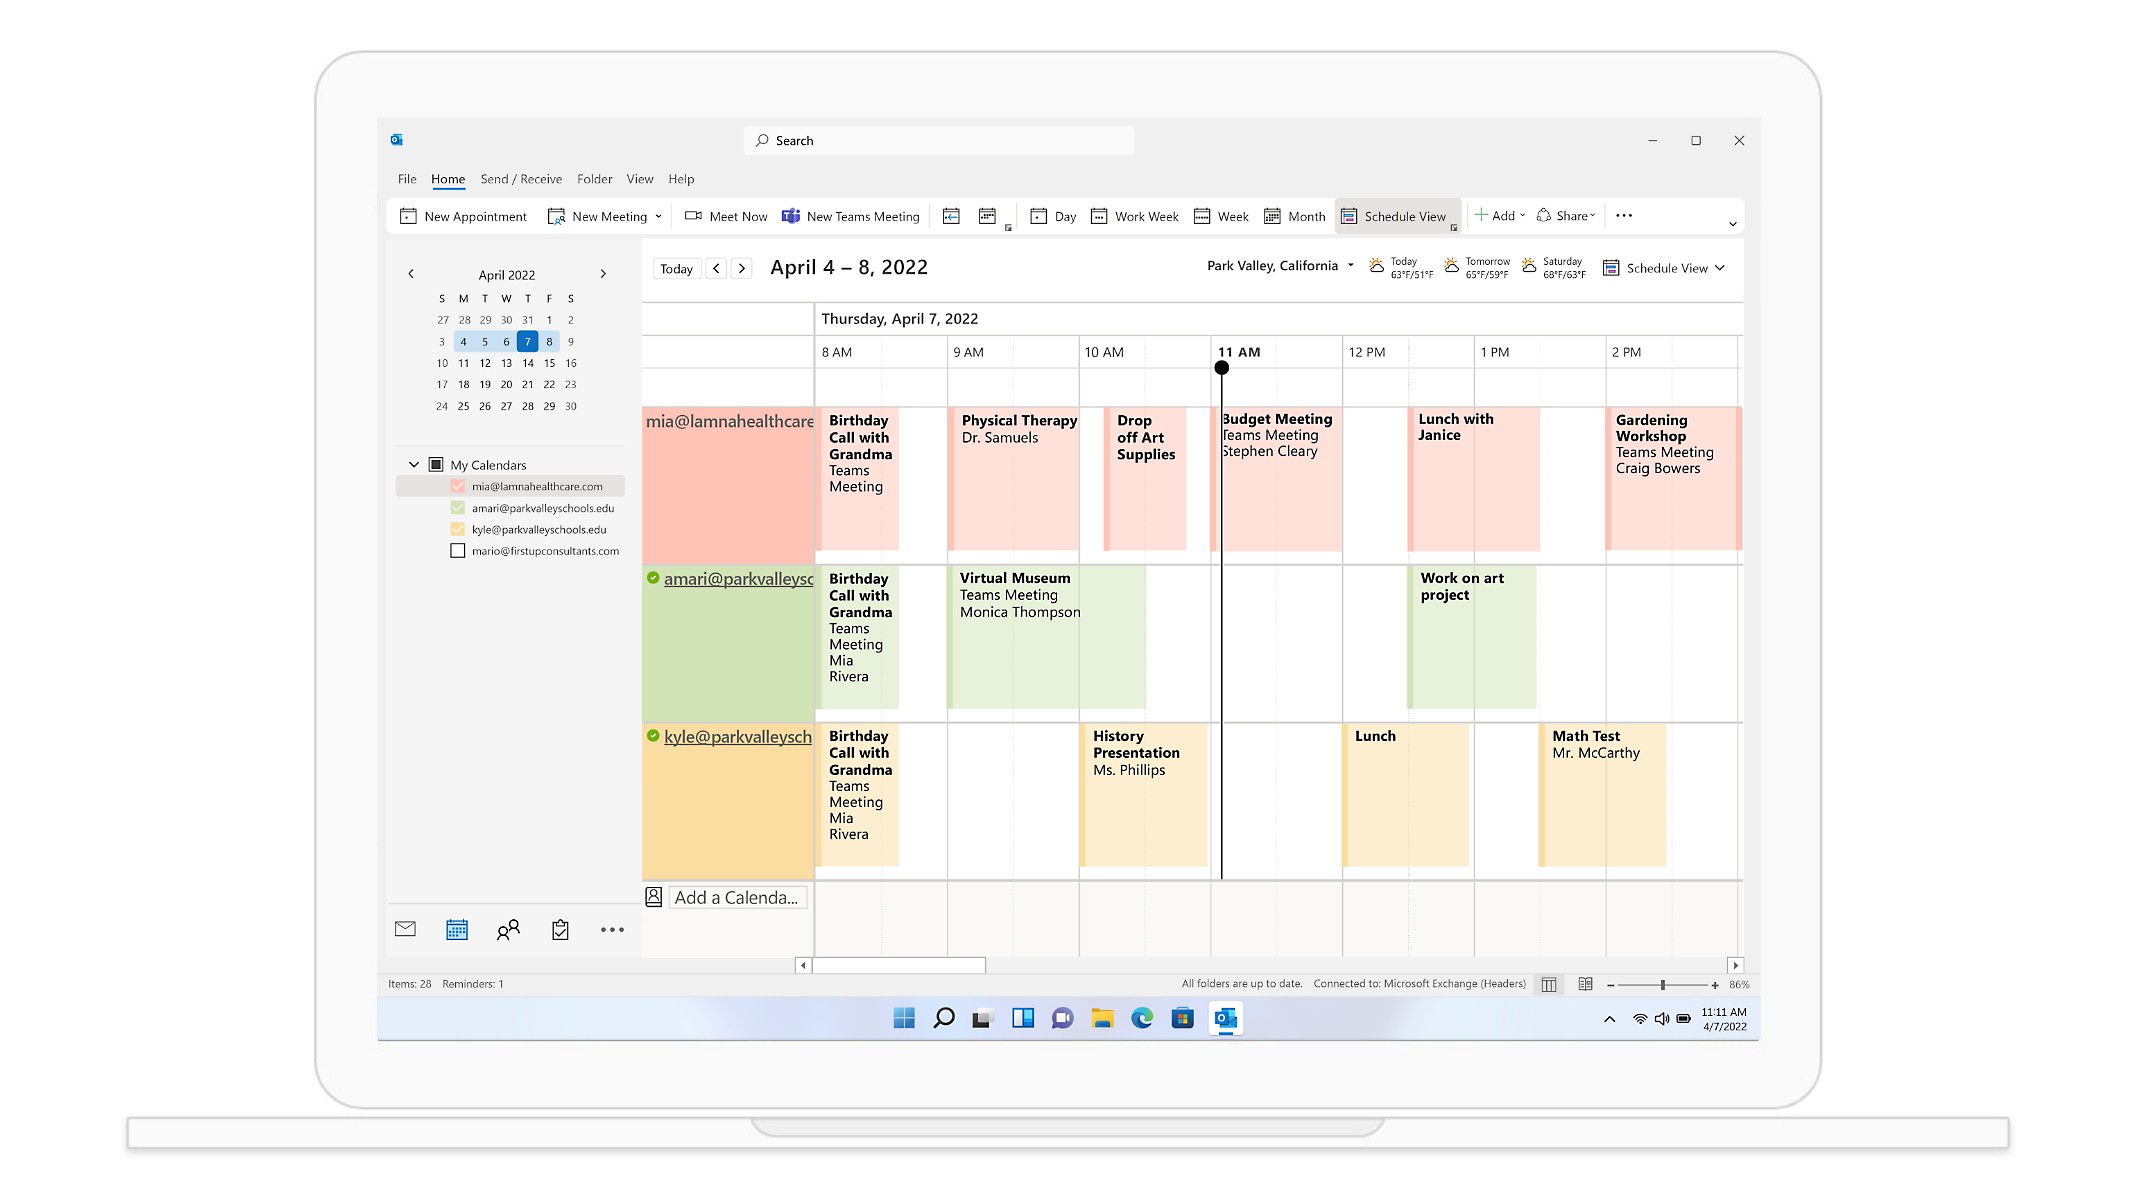 29 Mart haftasına ait toplantıları ve randevuları gösteren Outlook takvim görünümü.